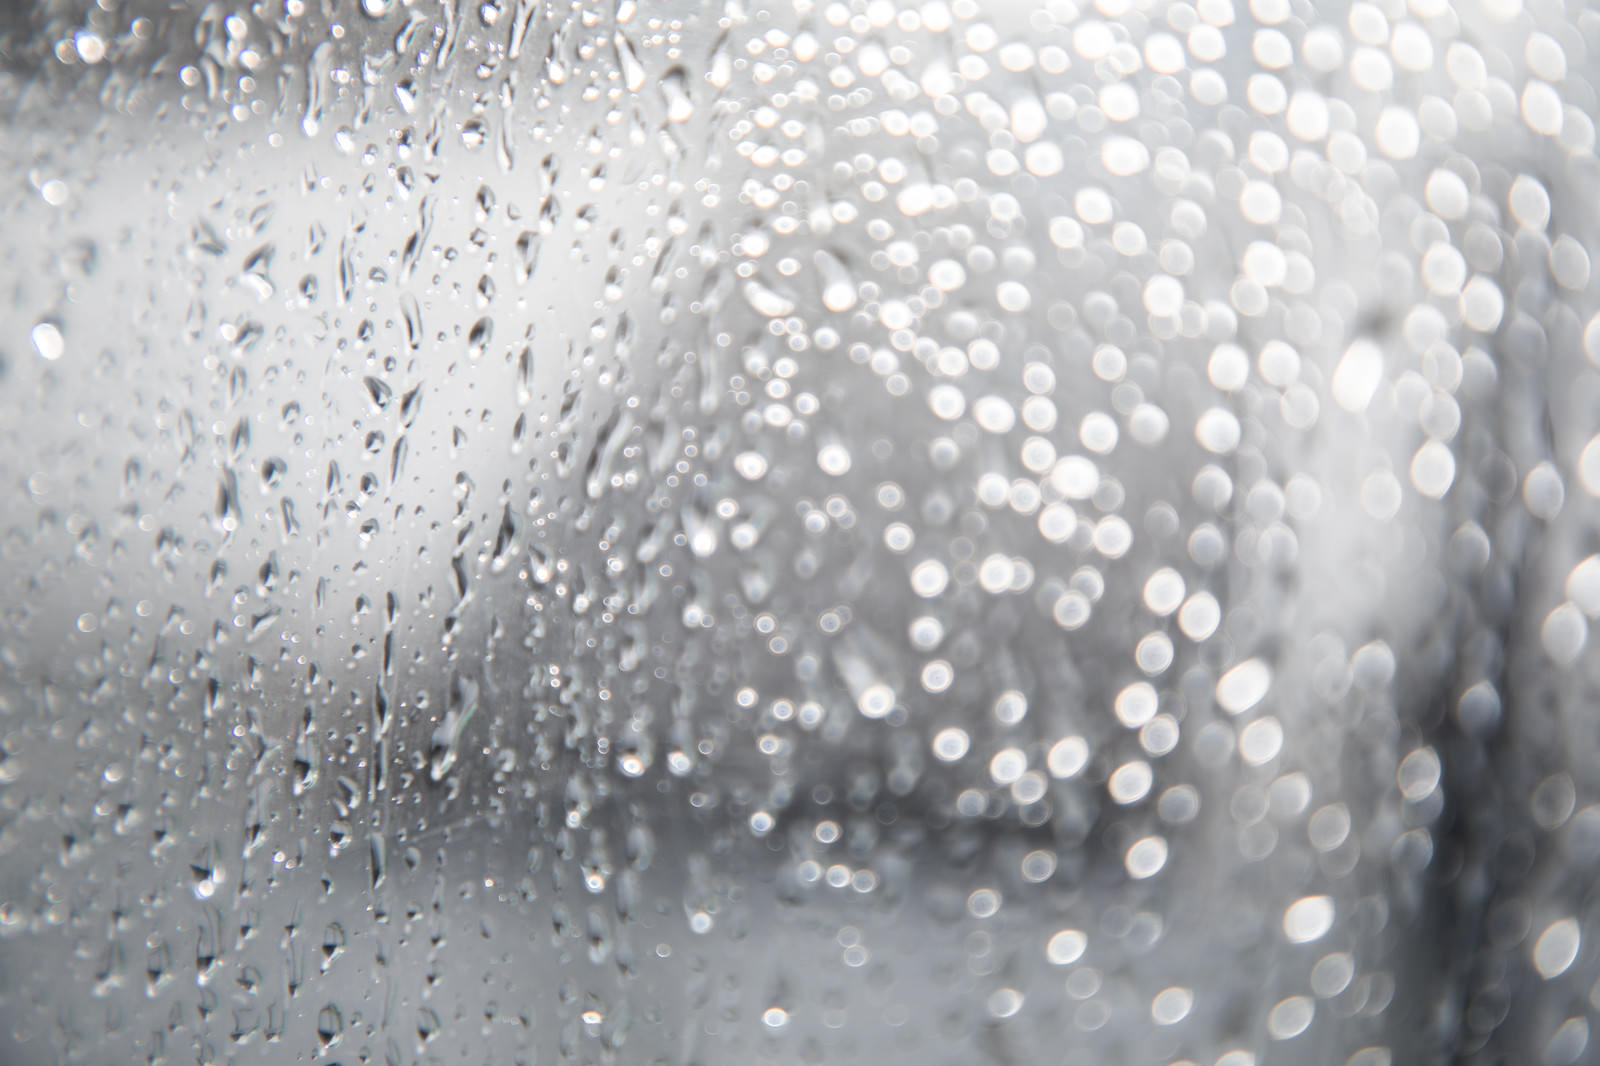 「窓につく雨の水滴 | フリー素材のぱくたそ」の写真